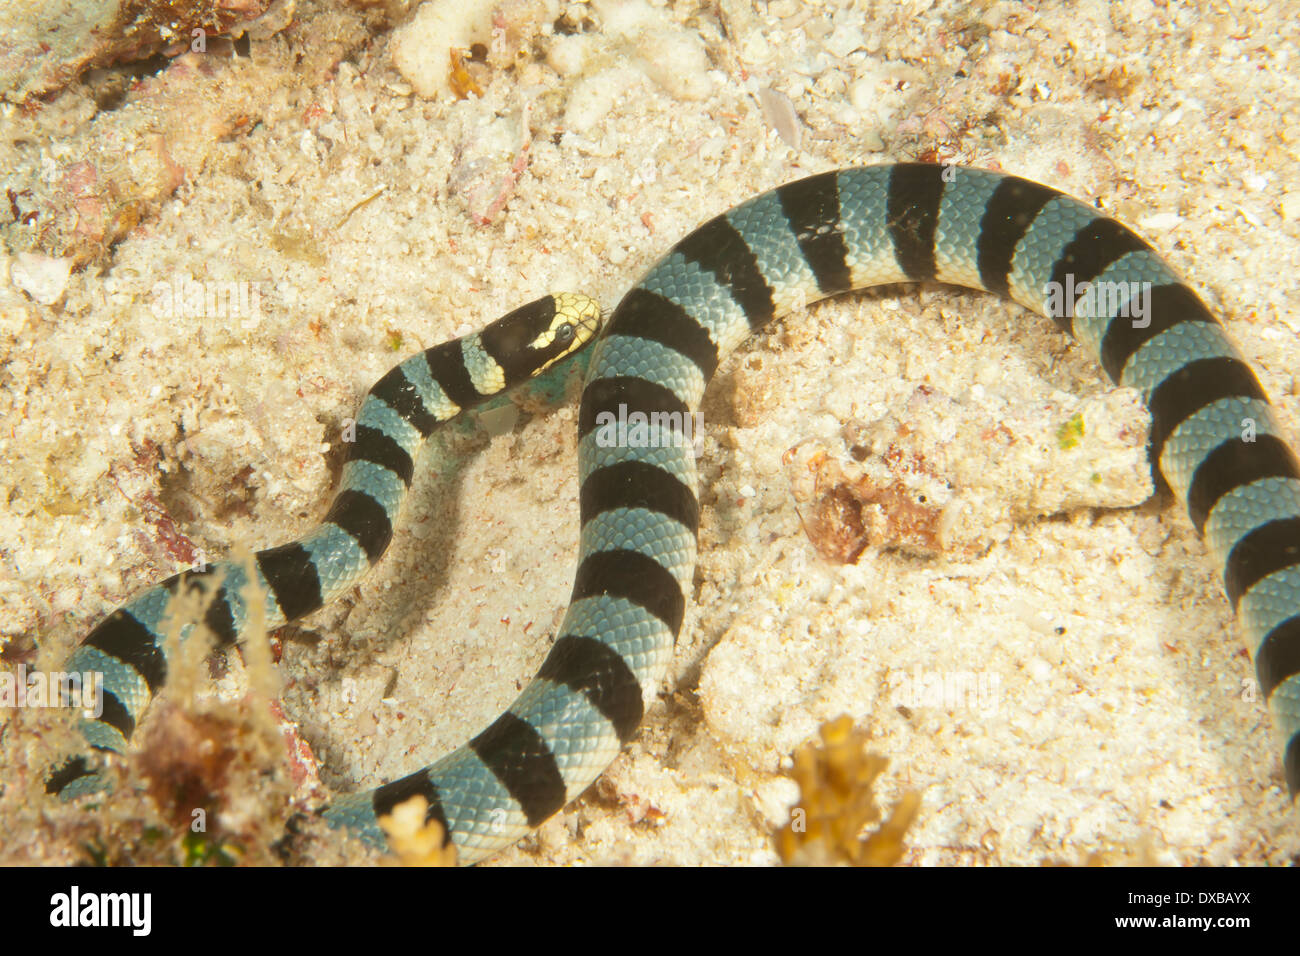 Sea snake, Citrus Ridge dive site, Tanjung Island, Raja Ampat, Indonesia Stock Photo